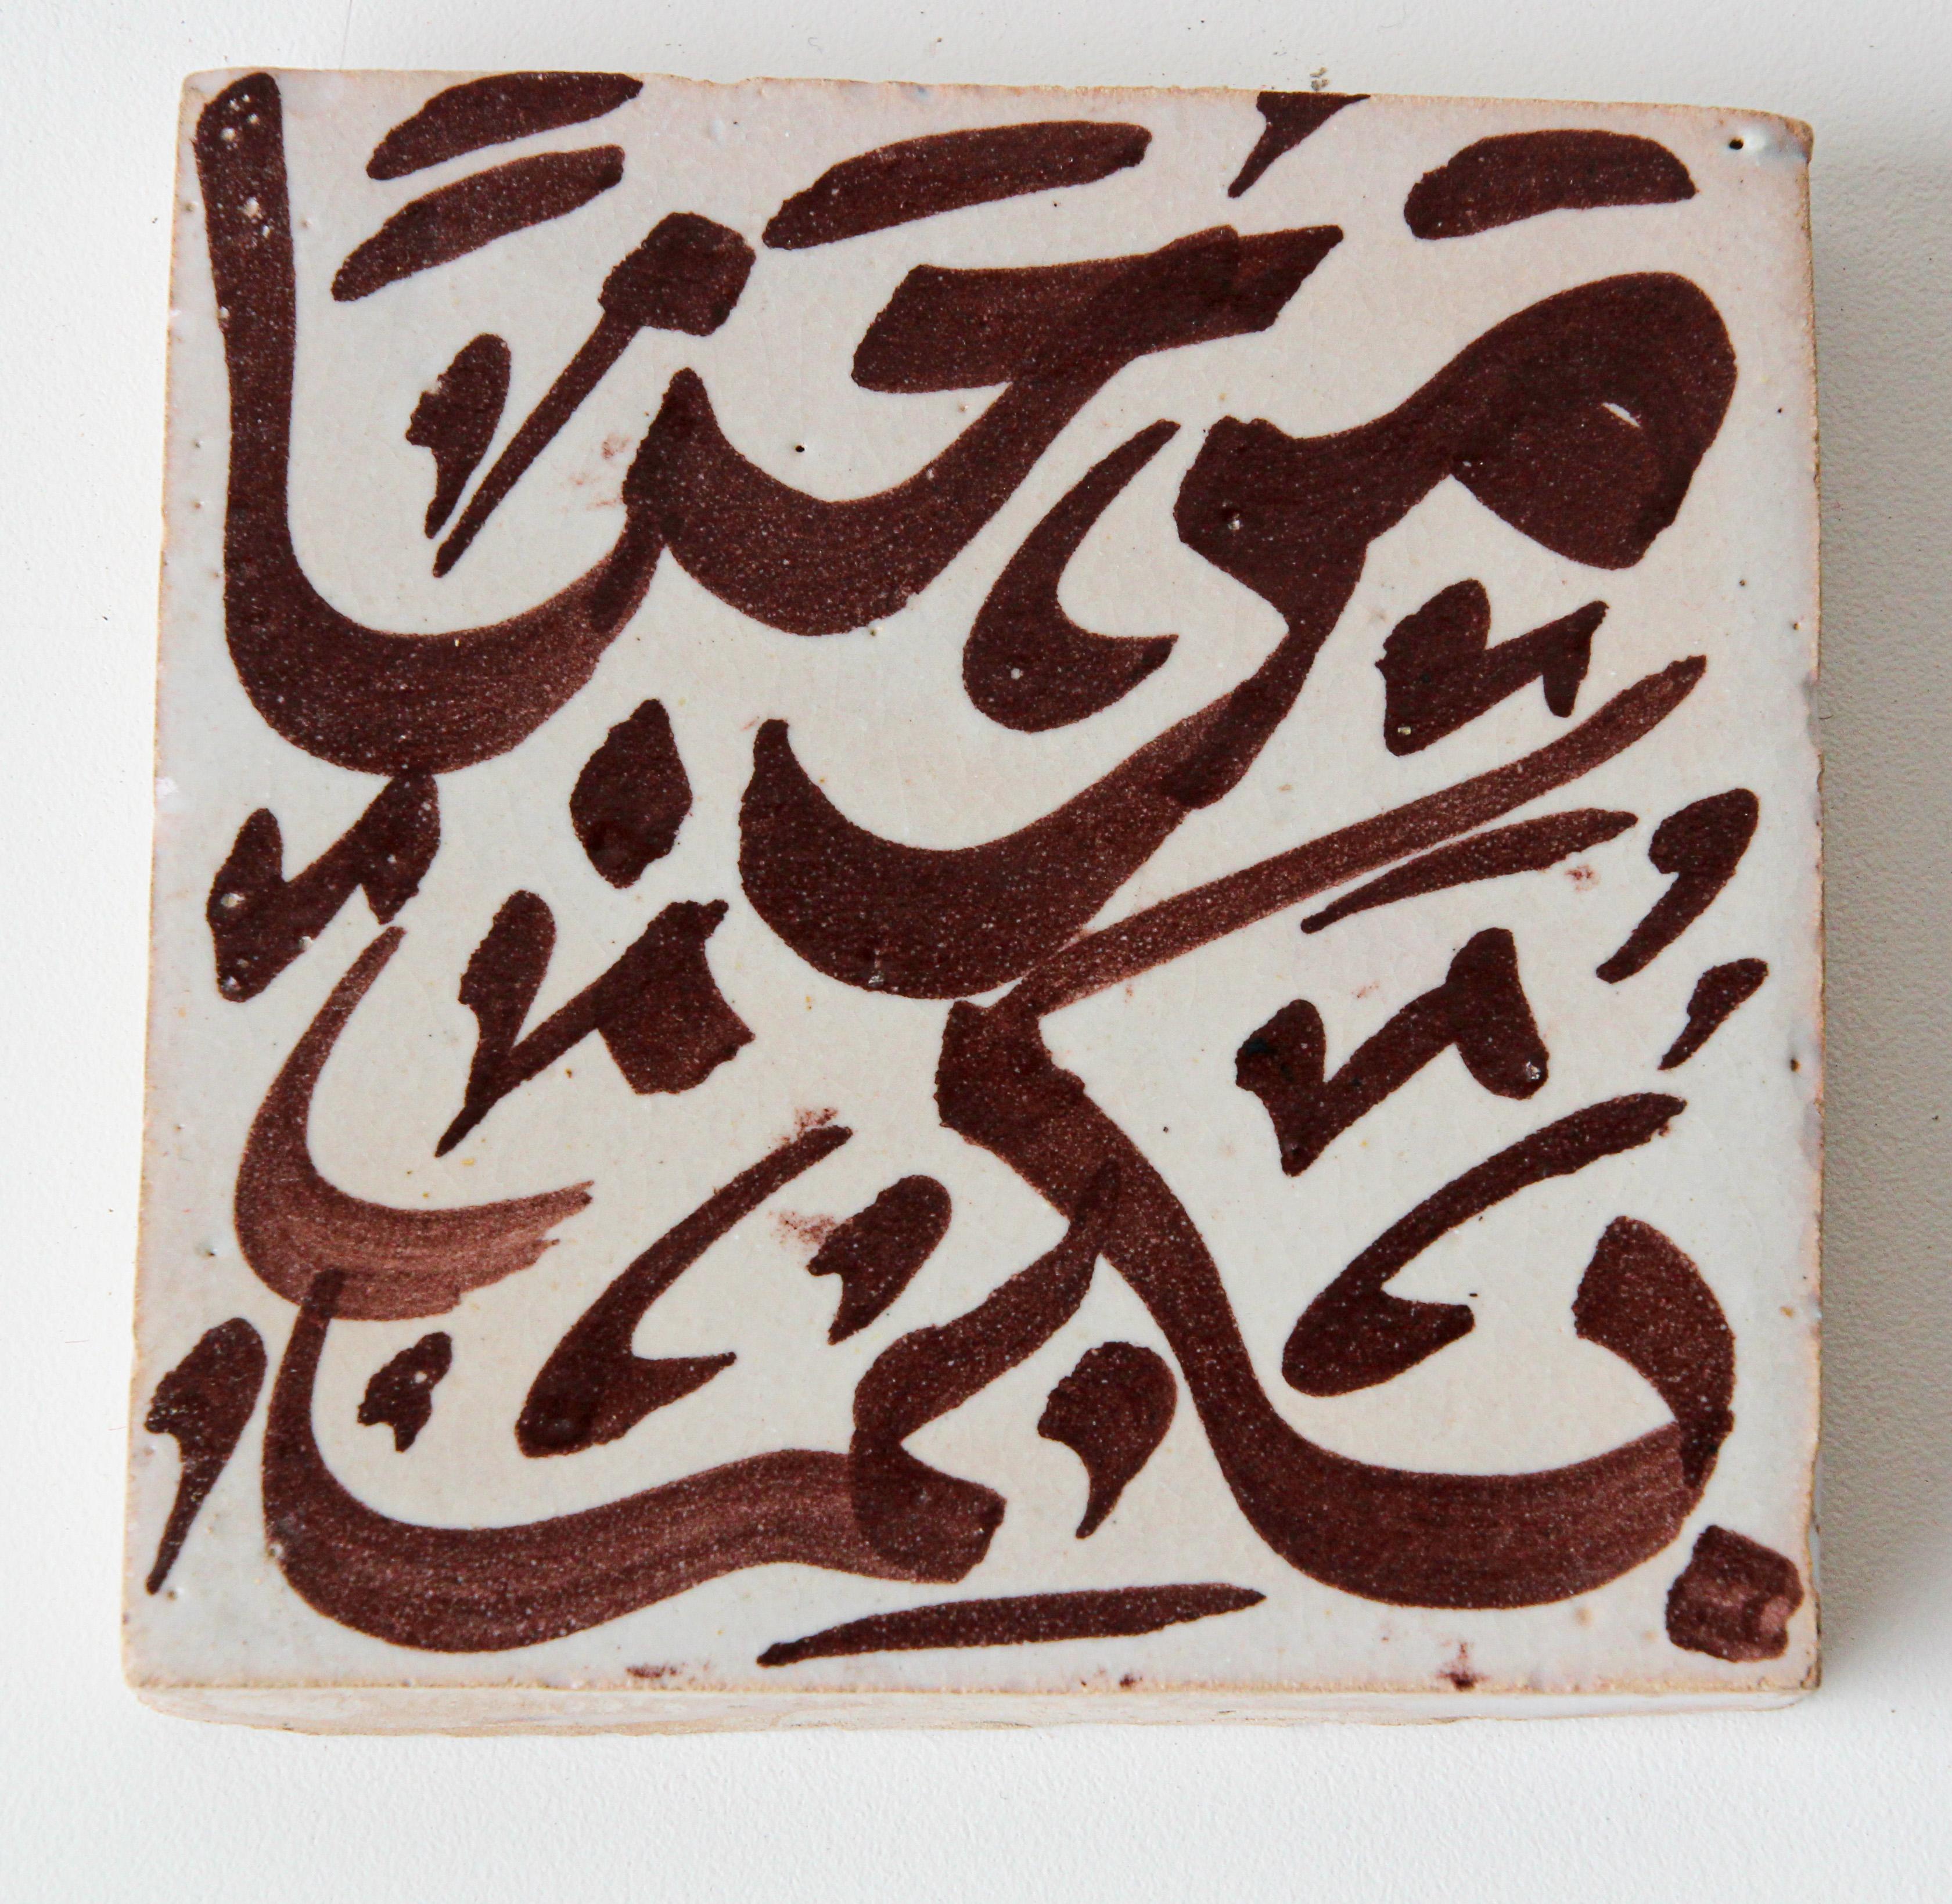 Moroccan Moorish Ceramic Tile with Arabic Writing in Brown